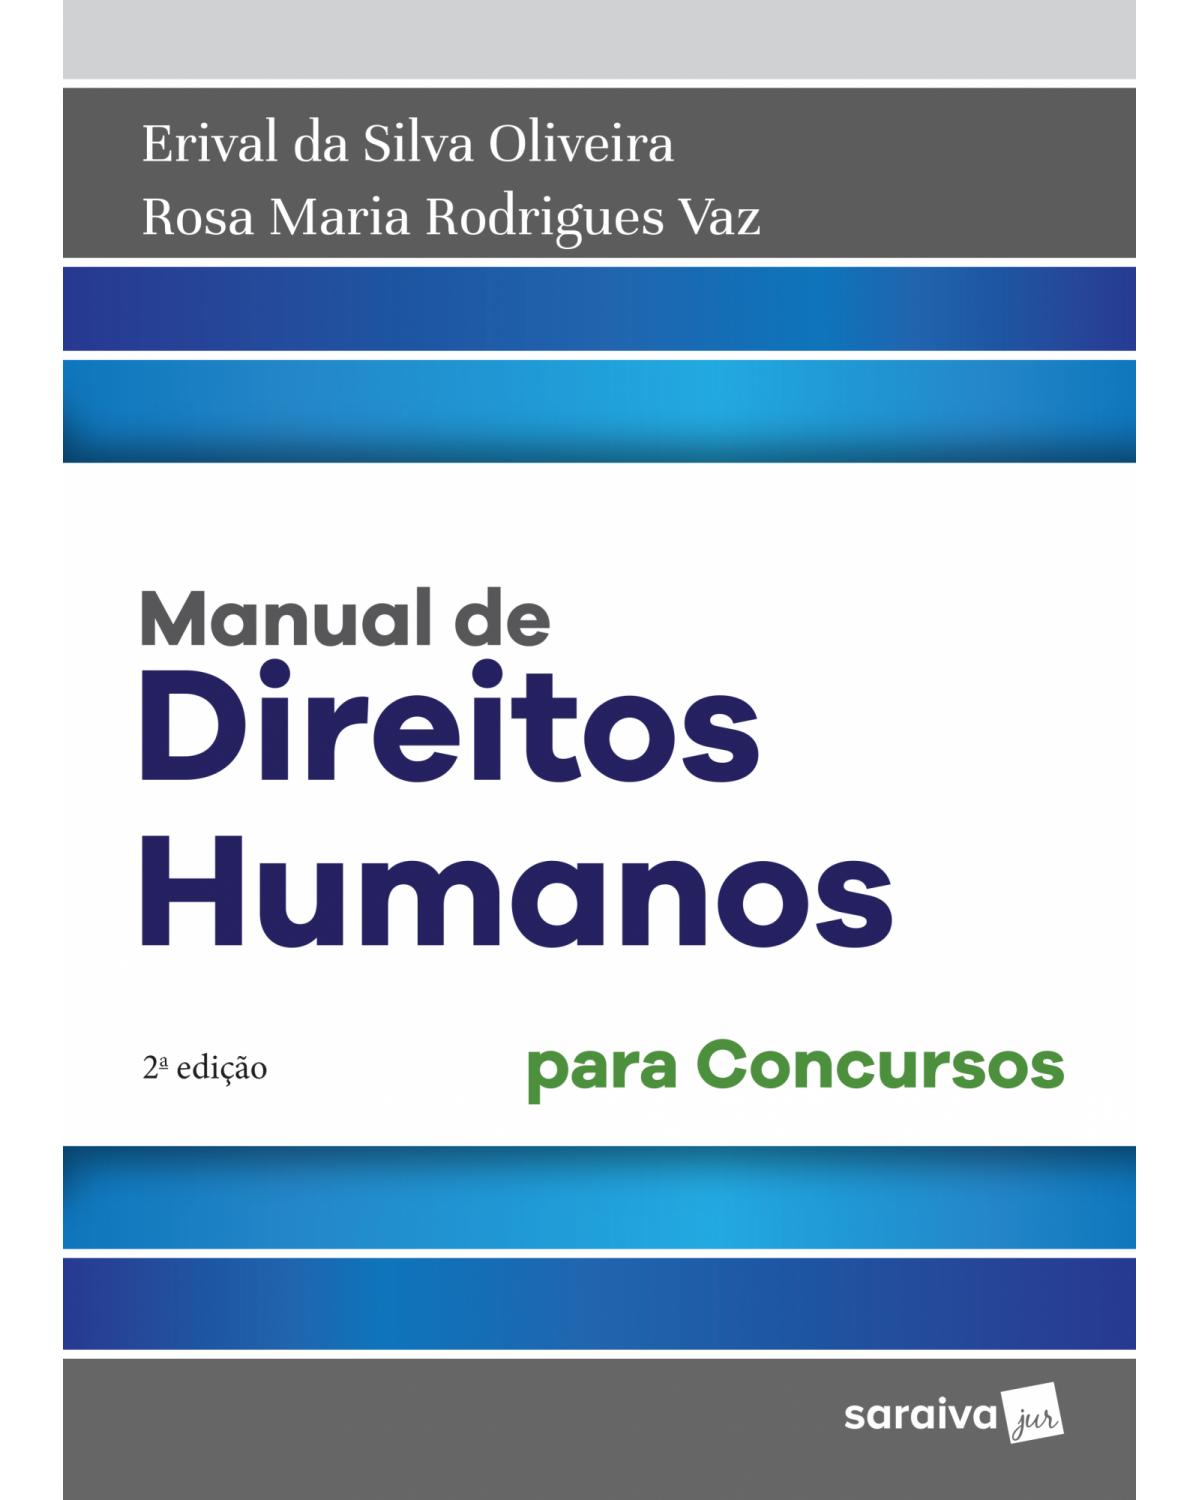 Manual de direitos humanos - para concursos - 2ª Edição | 2018